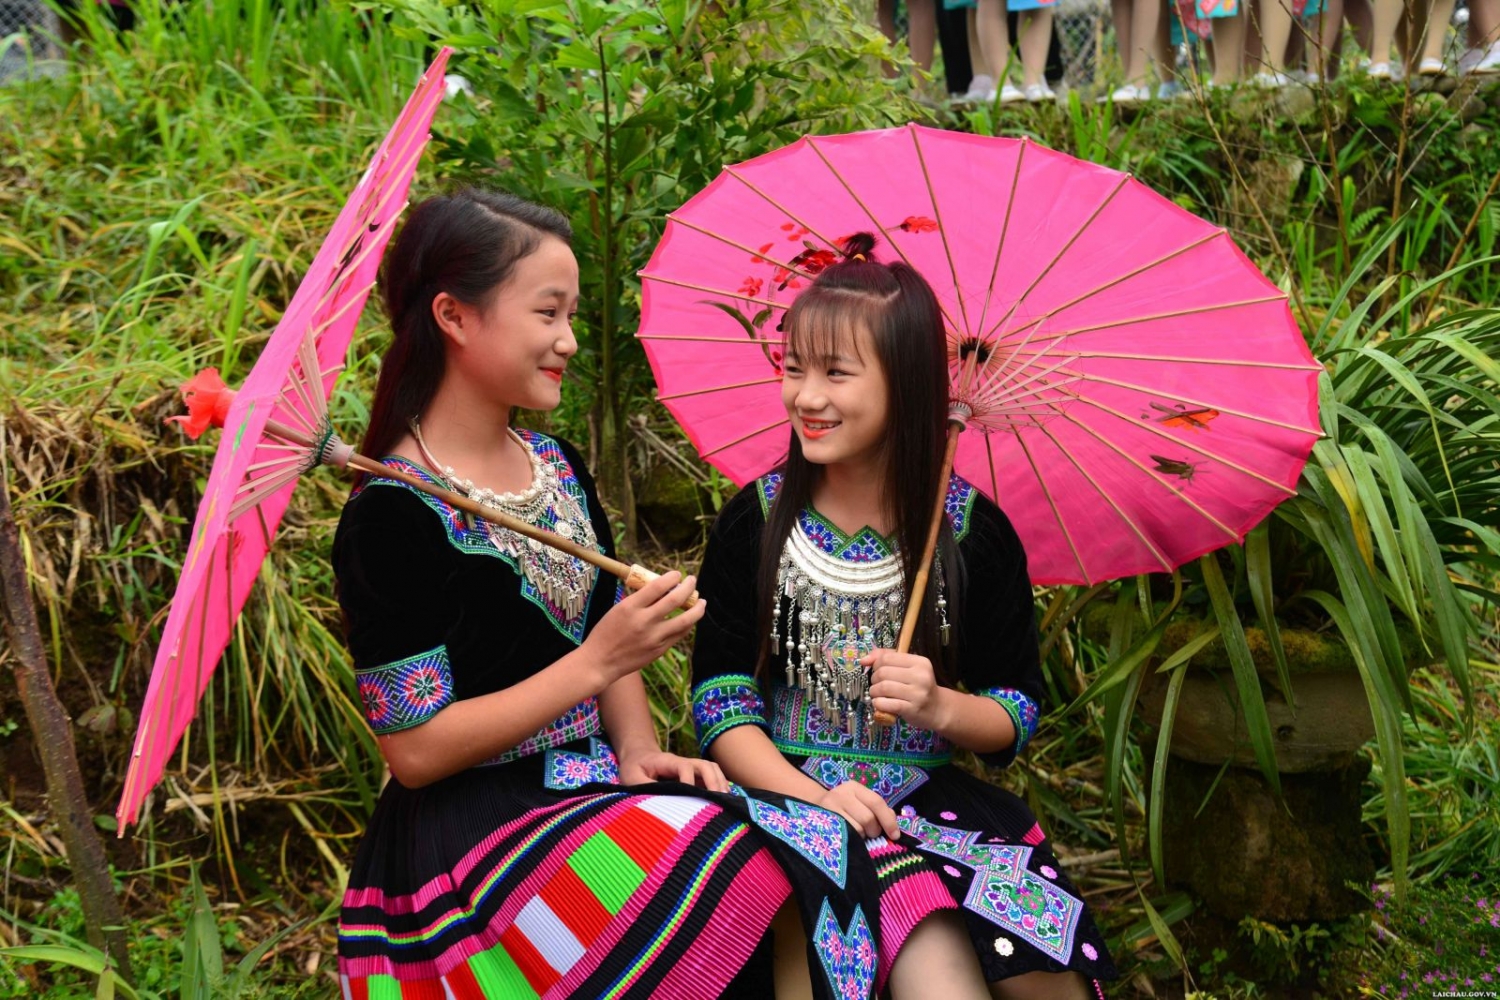 Vẻ đẹp của phụ nữ các dân tộc thiểu số Lai Châu